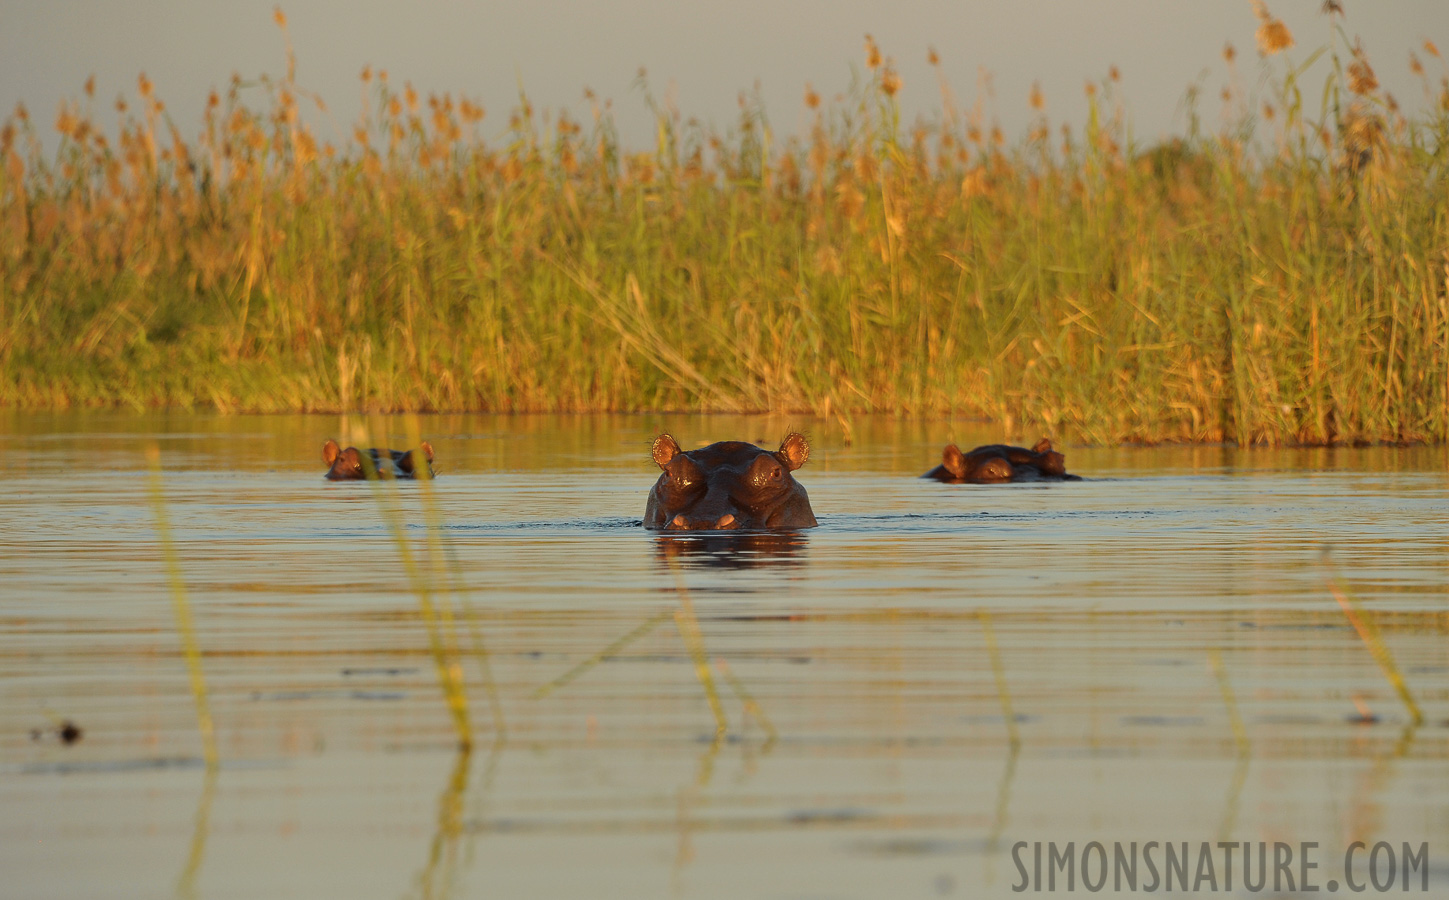 Hippopotamus amphibius capensis [300 mm, 1/640 sec at f / 8.0, ISO 800]